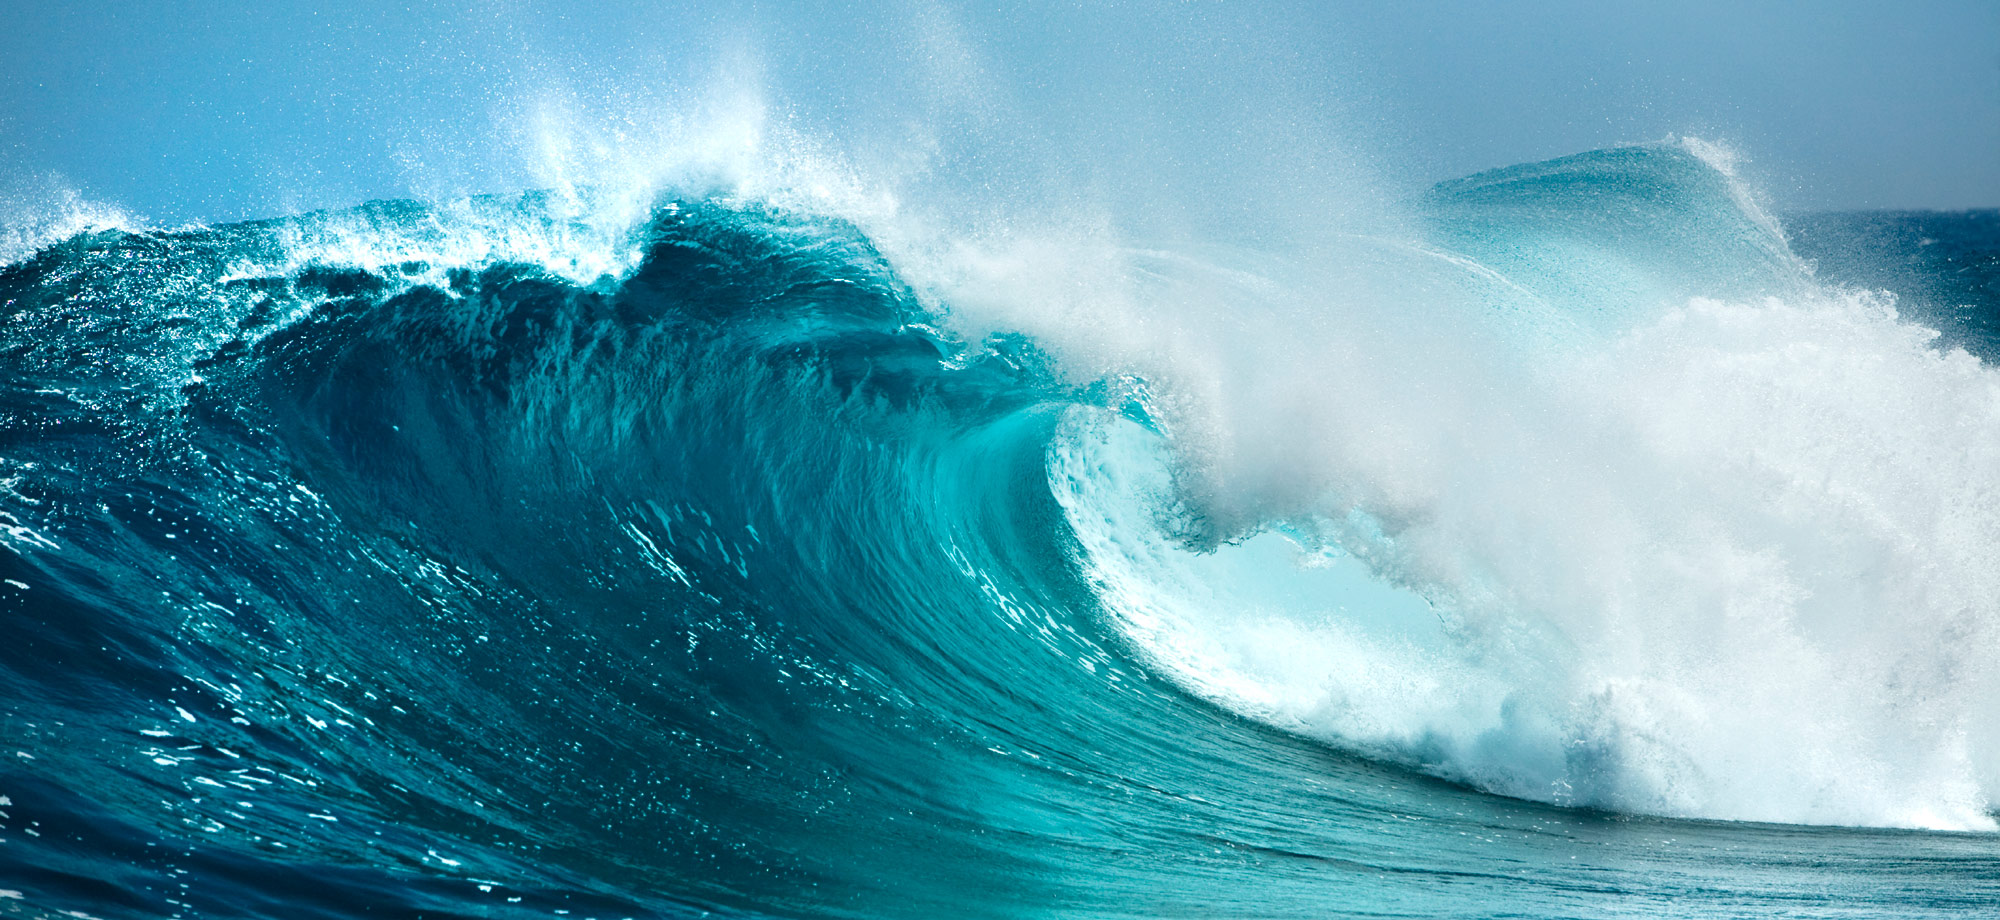 Ocean Energy Wave Image